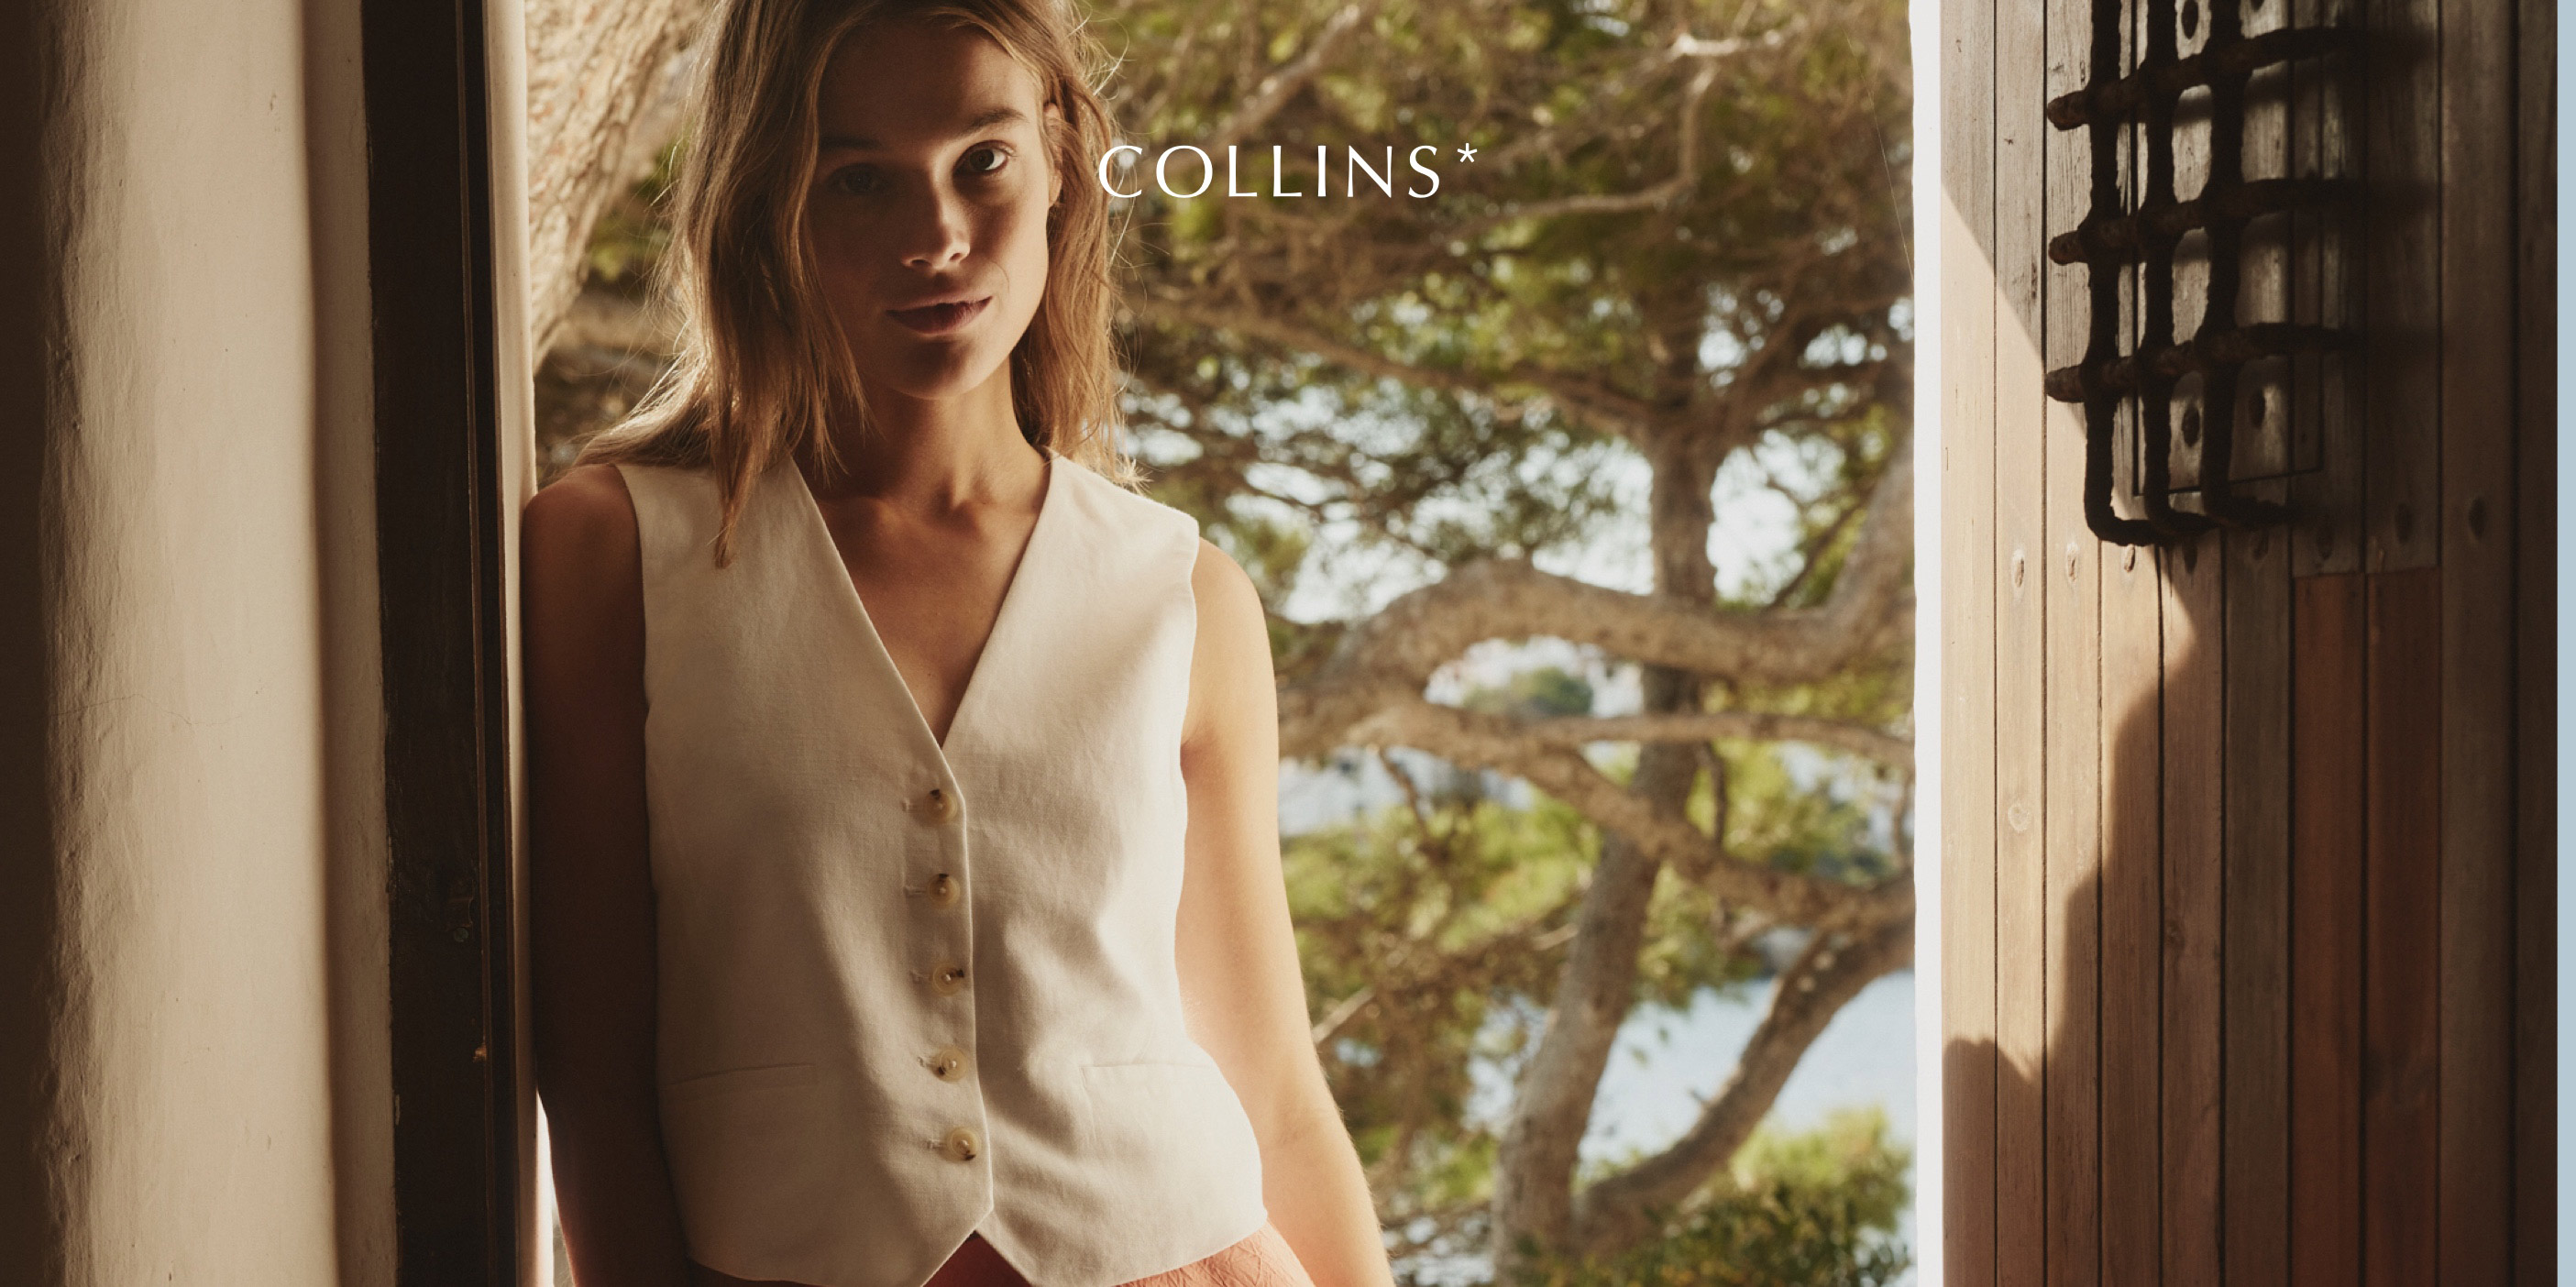 Collins Fashion Multibrand Store